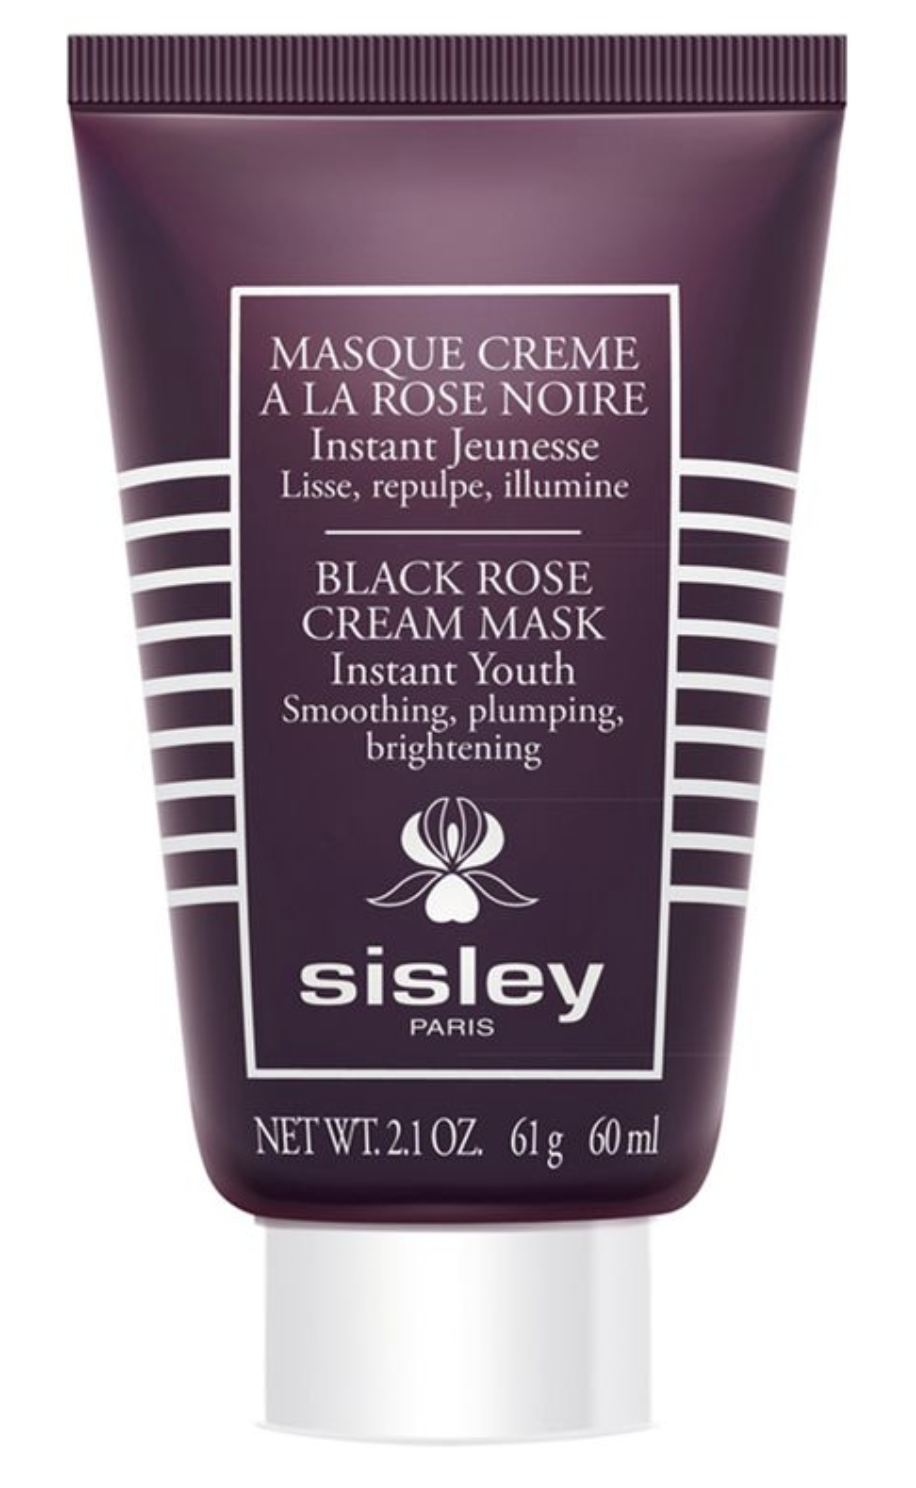 A La Rose Noire Masque Crème 60ml